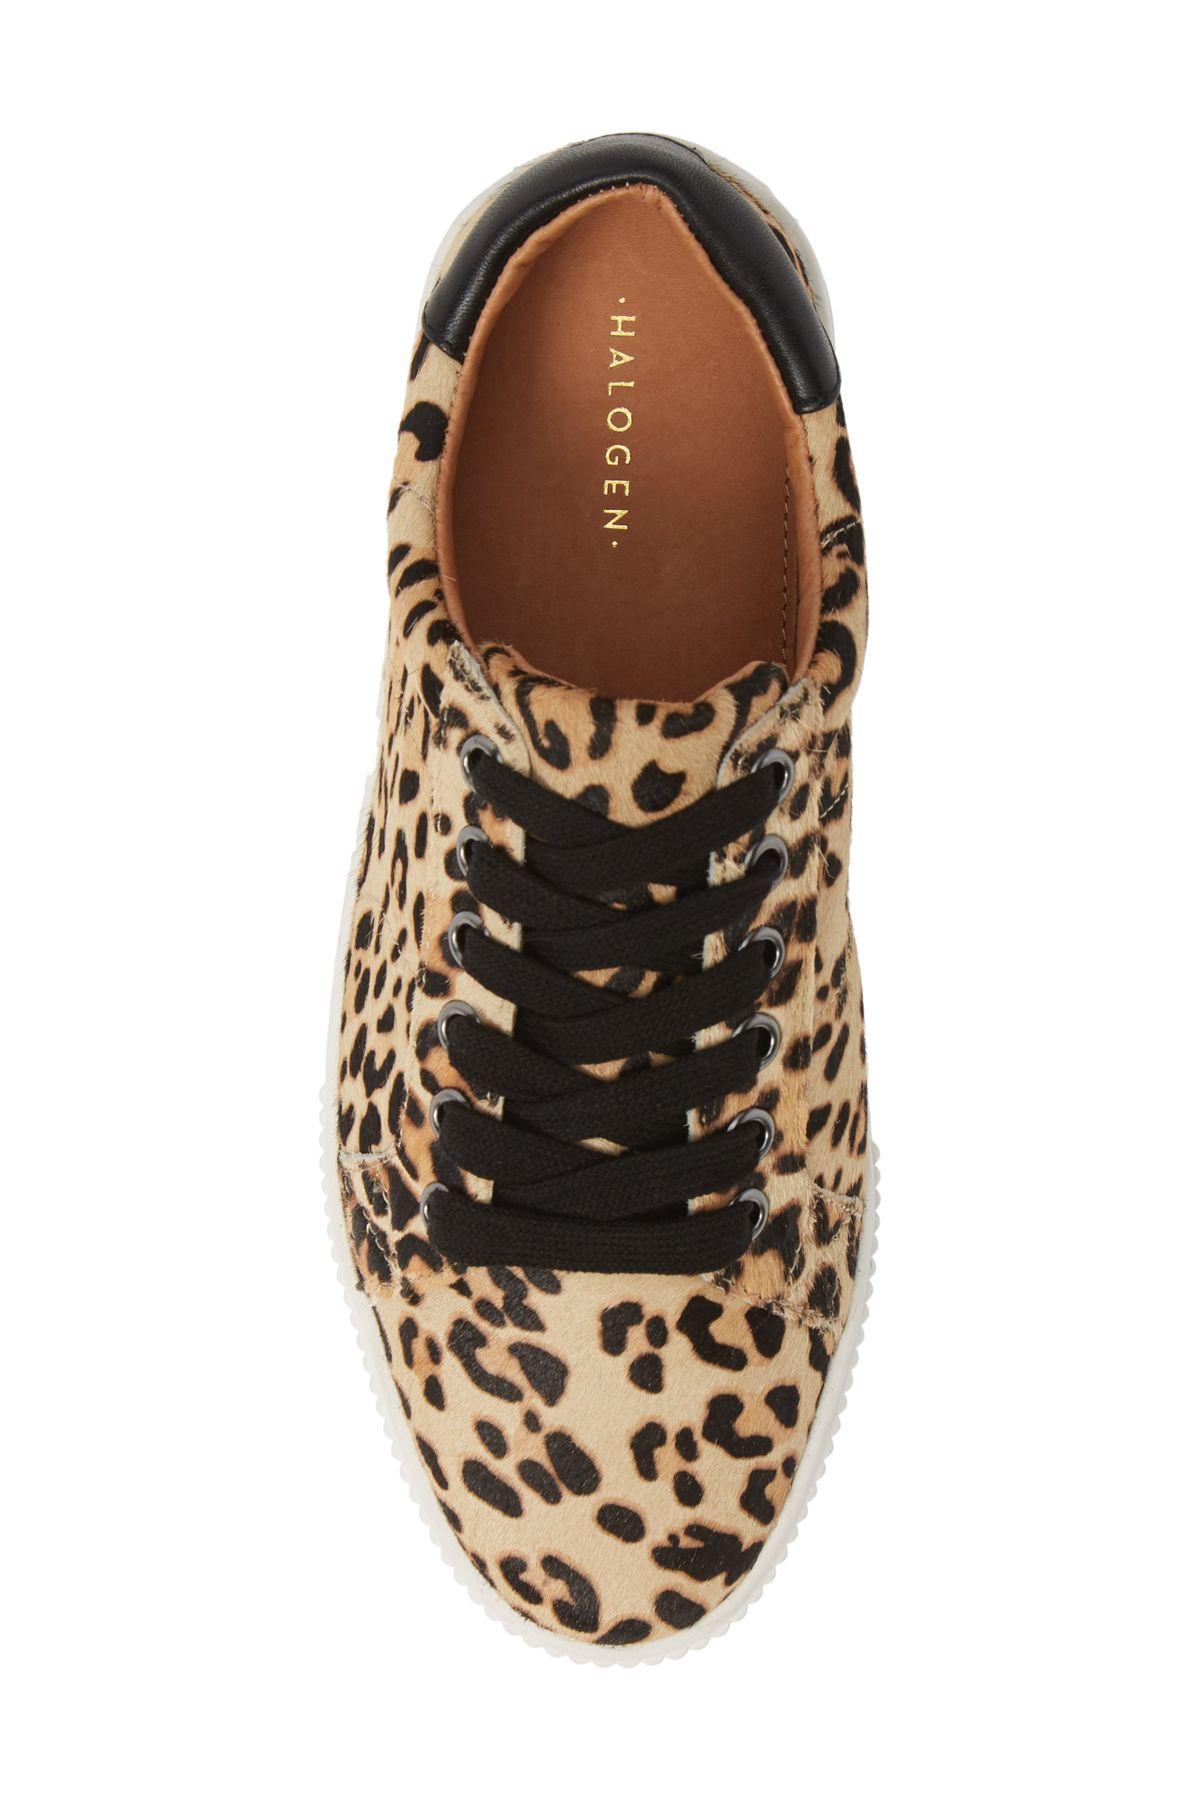 halogen cheetah sneakers